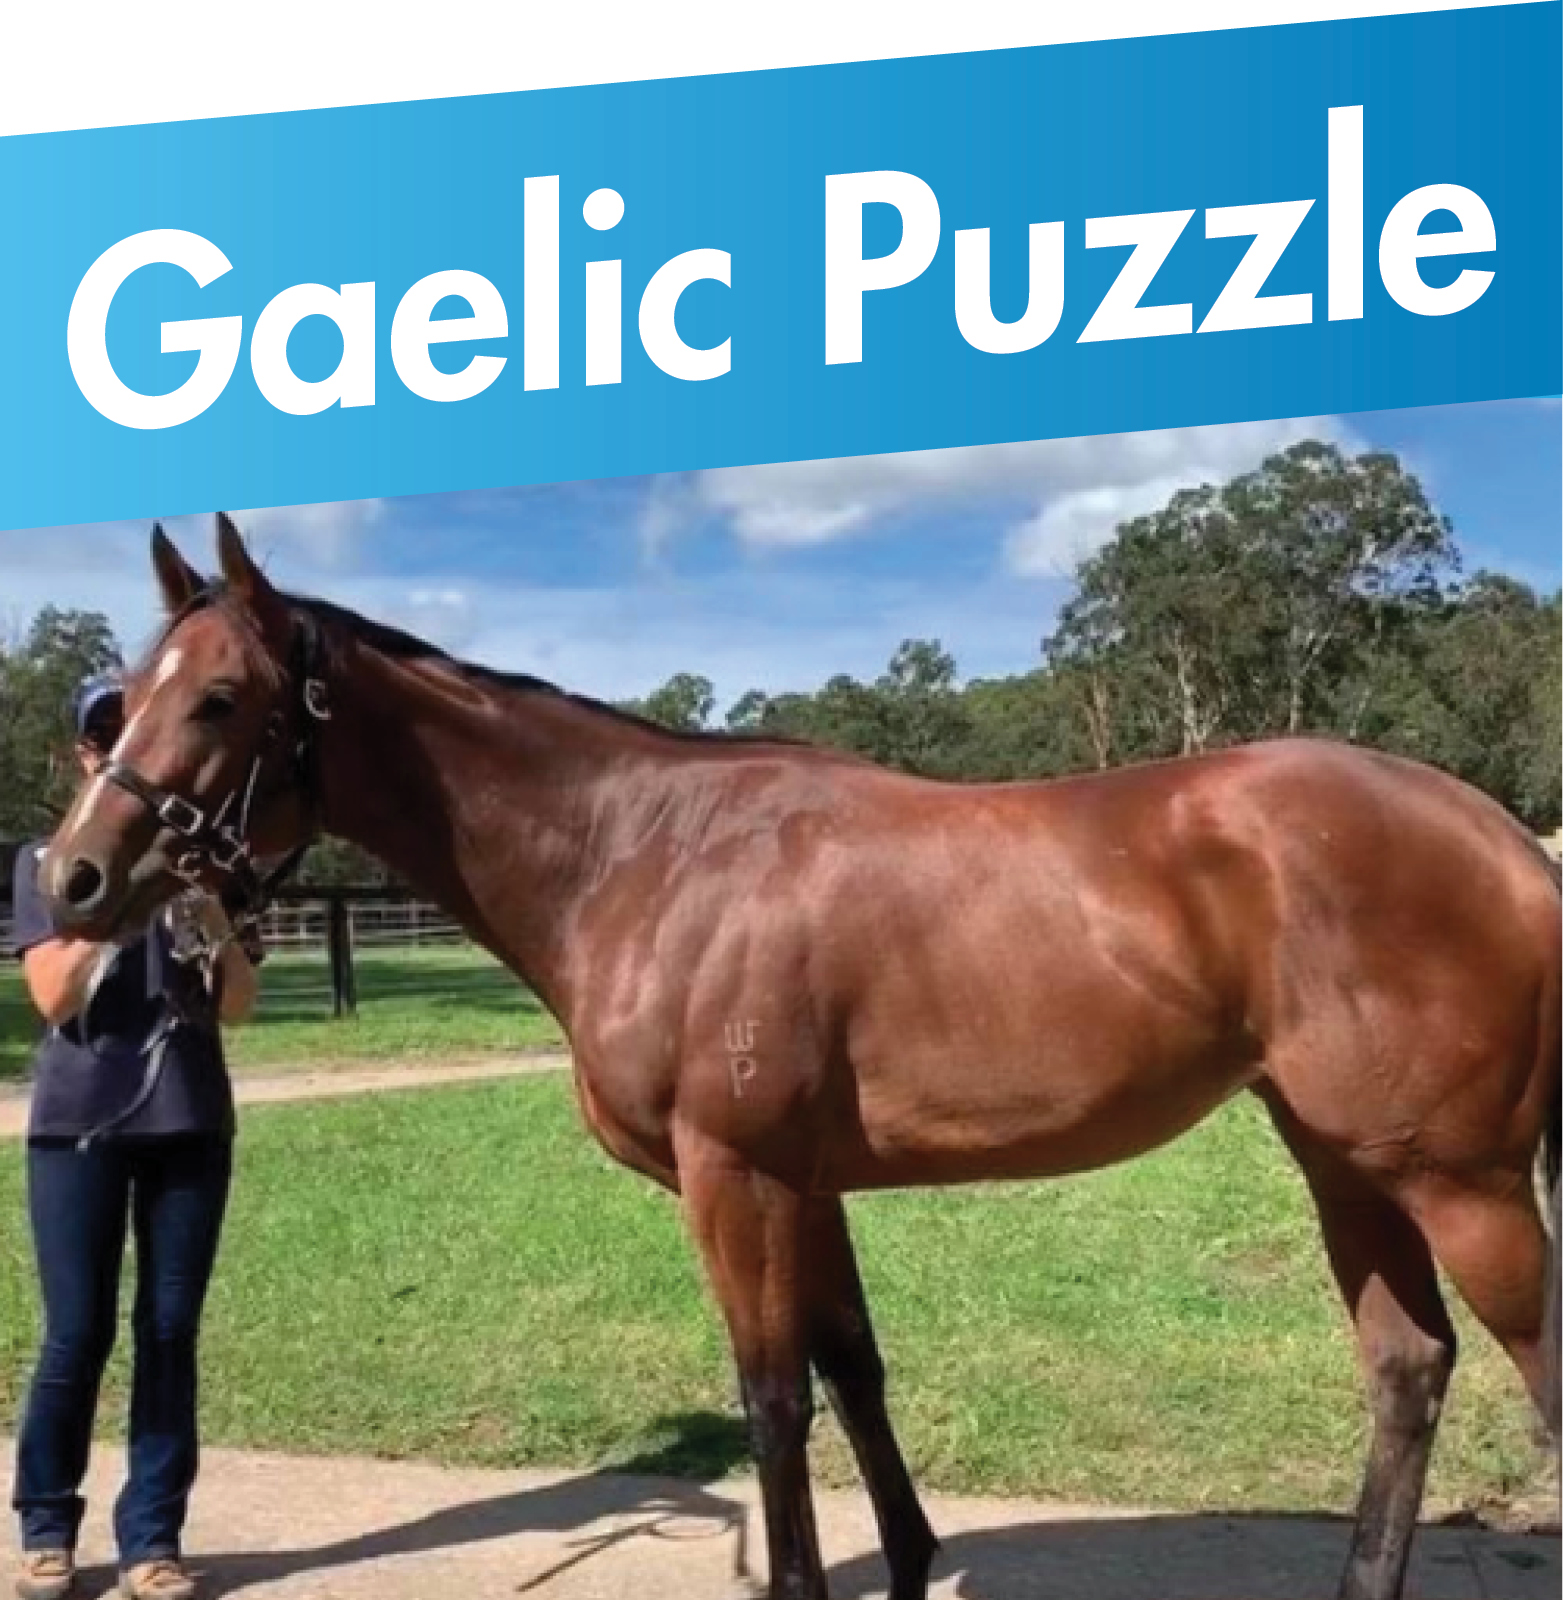 Gaelic Puzzle Horse Sold